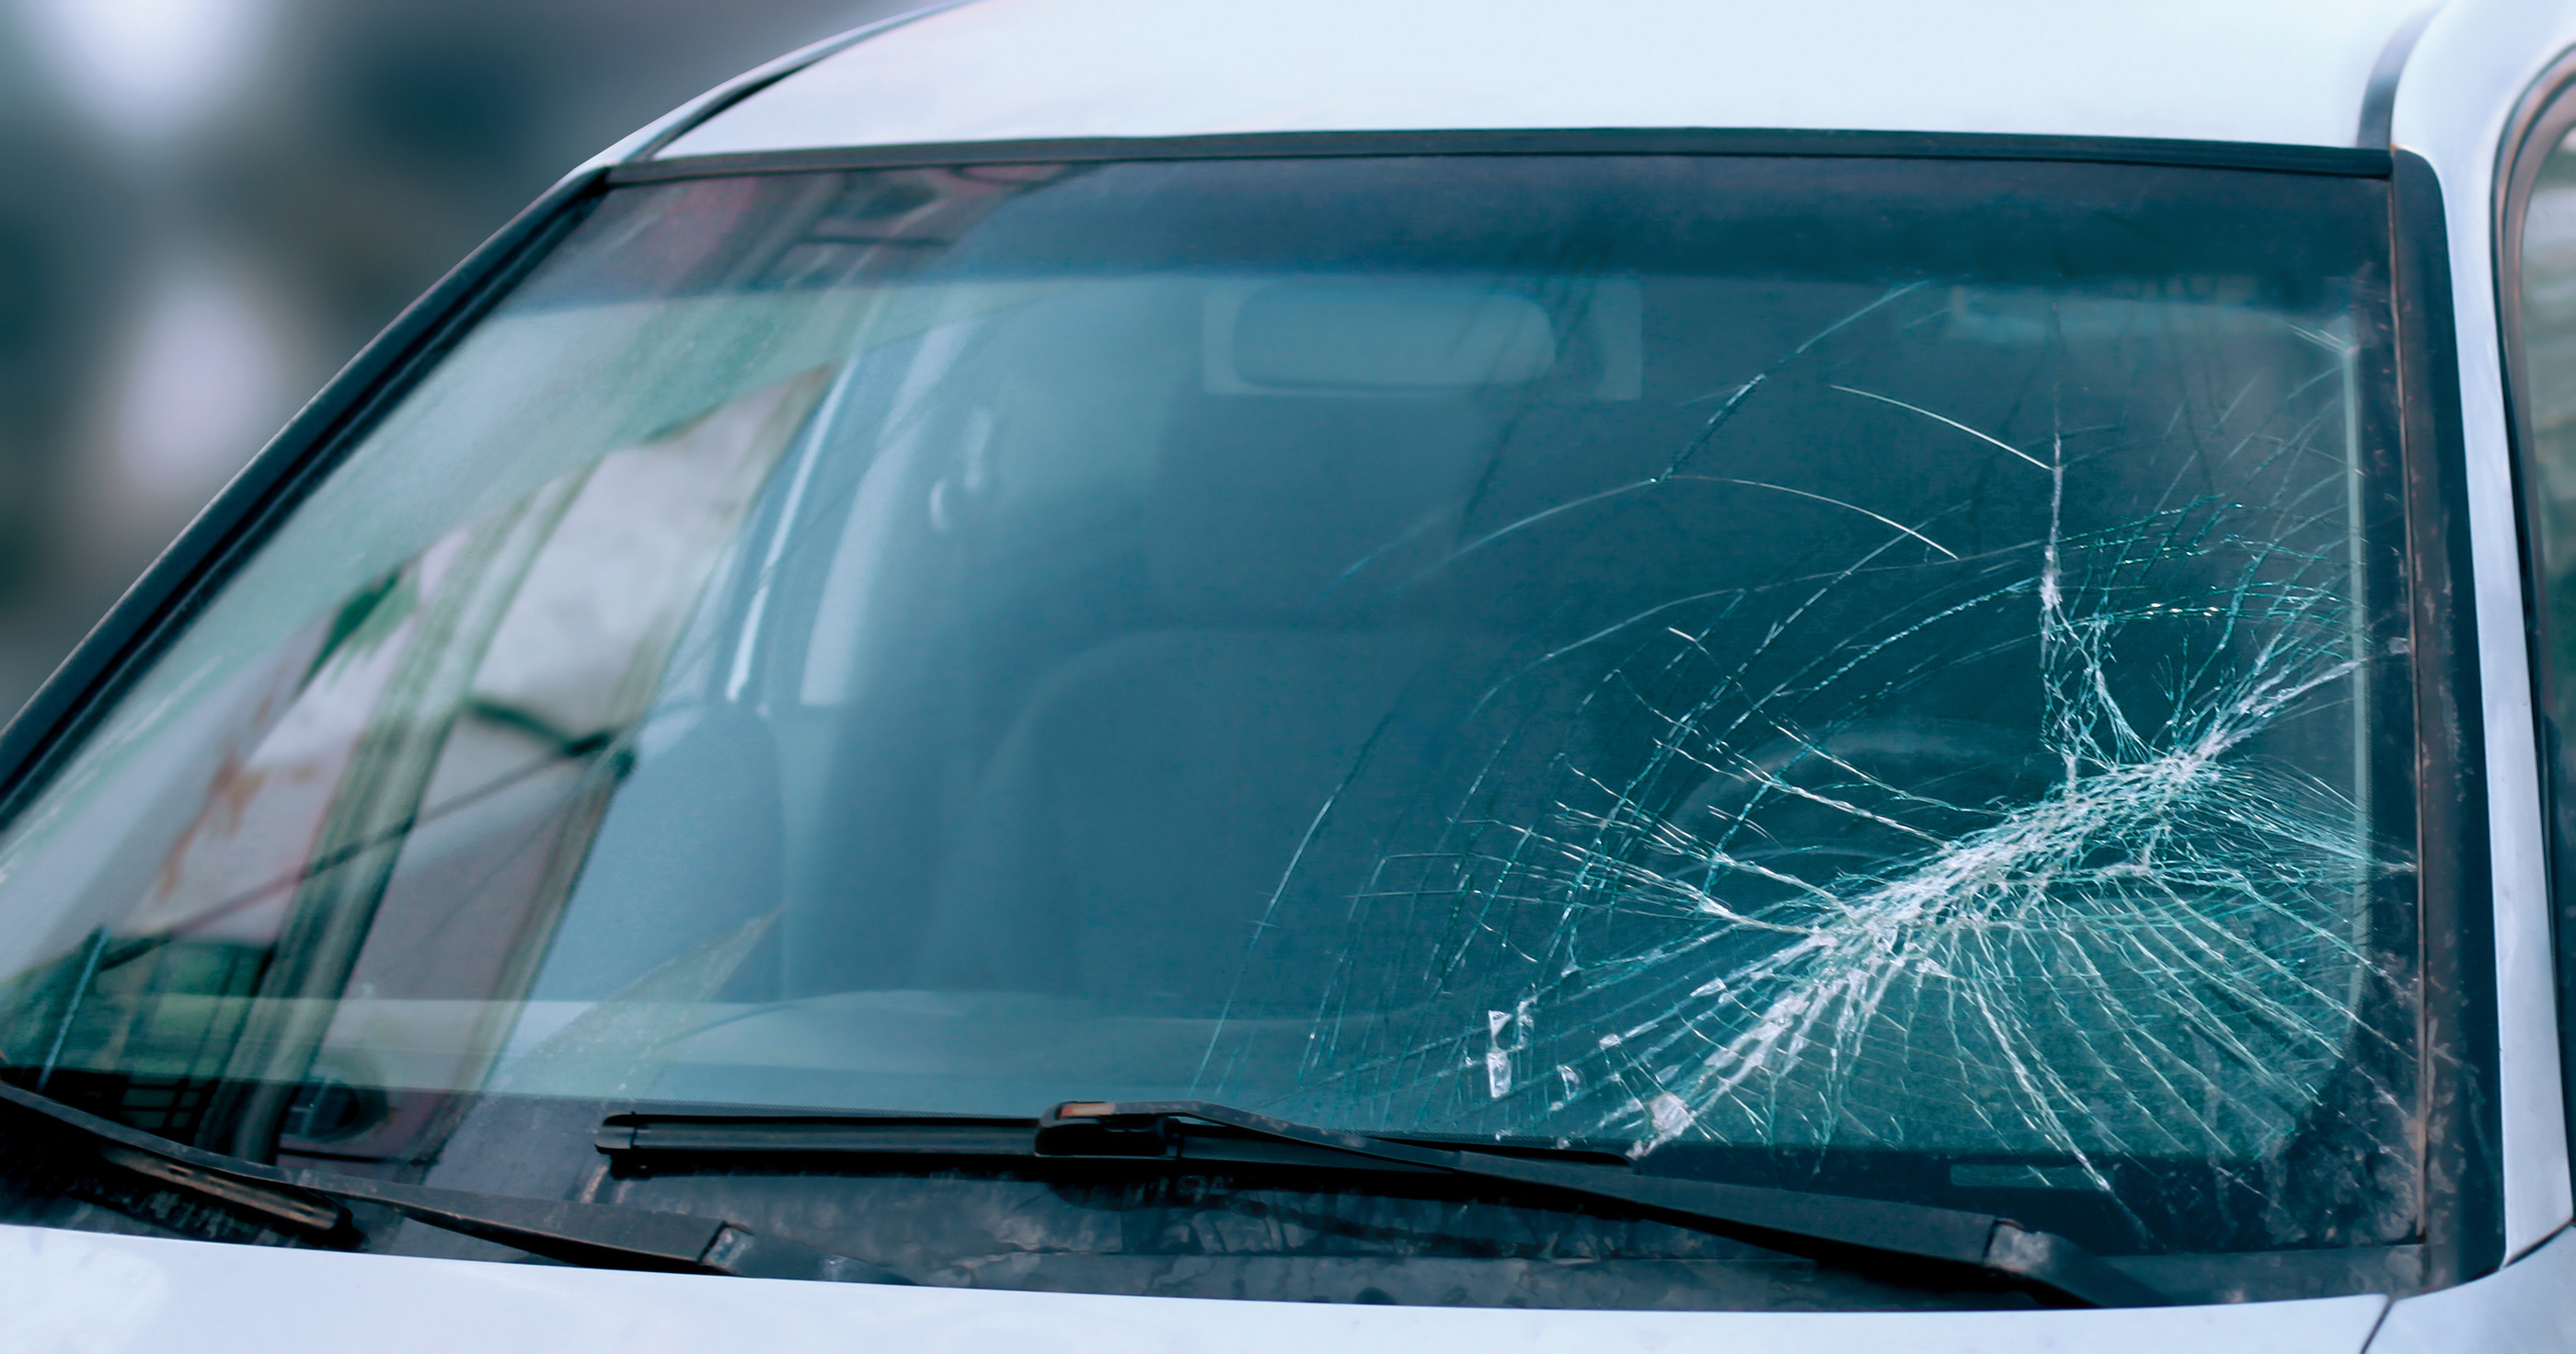 jstorrent cracked windshield